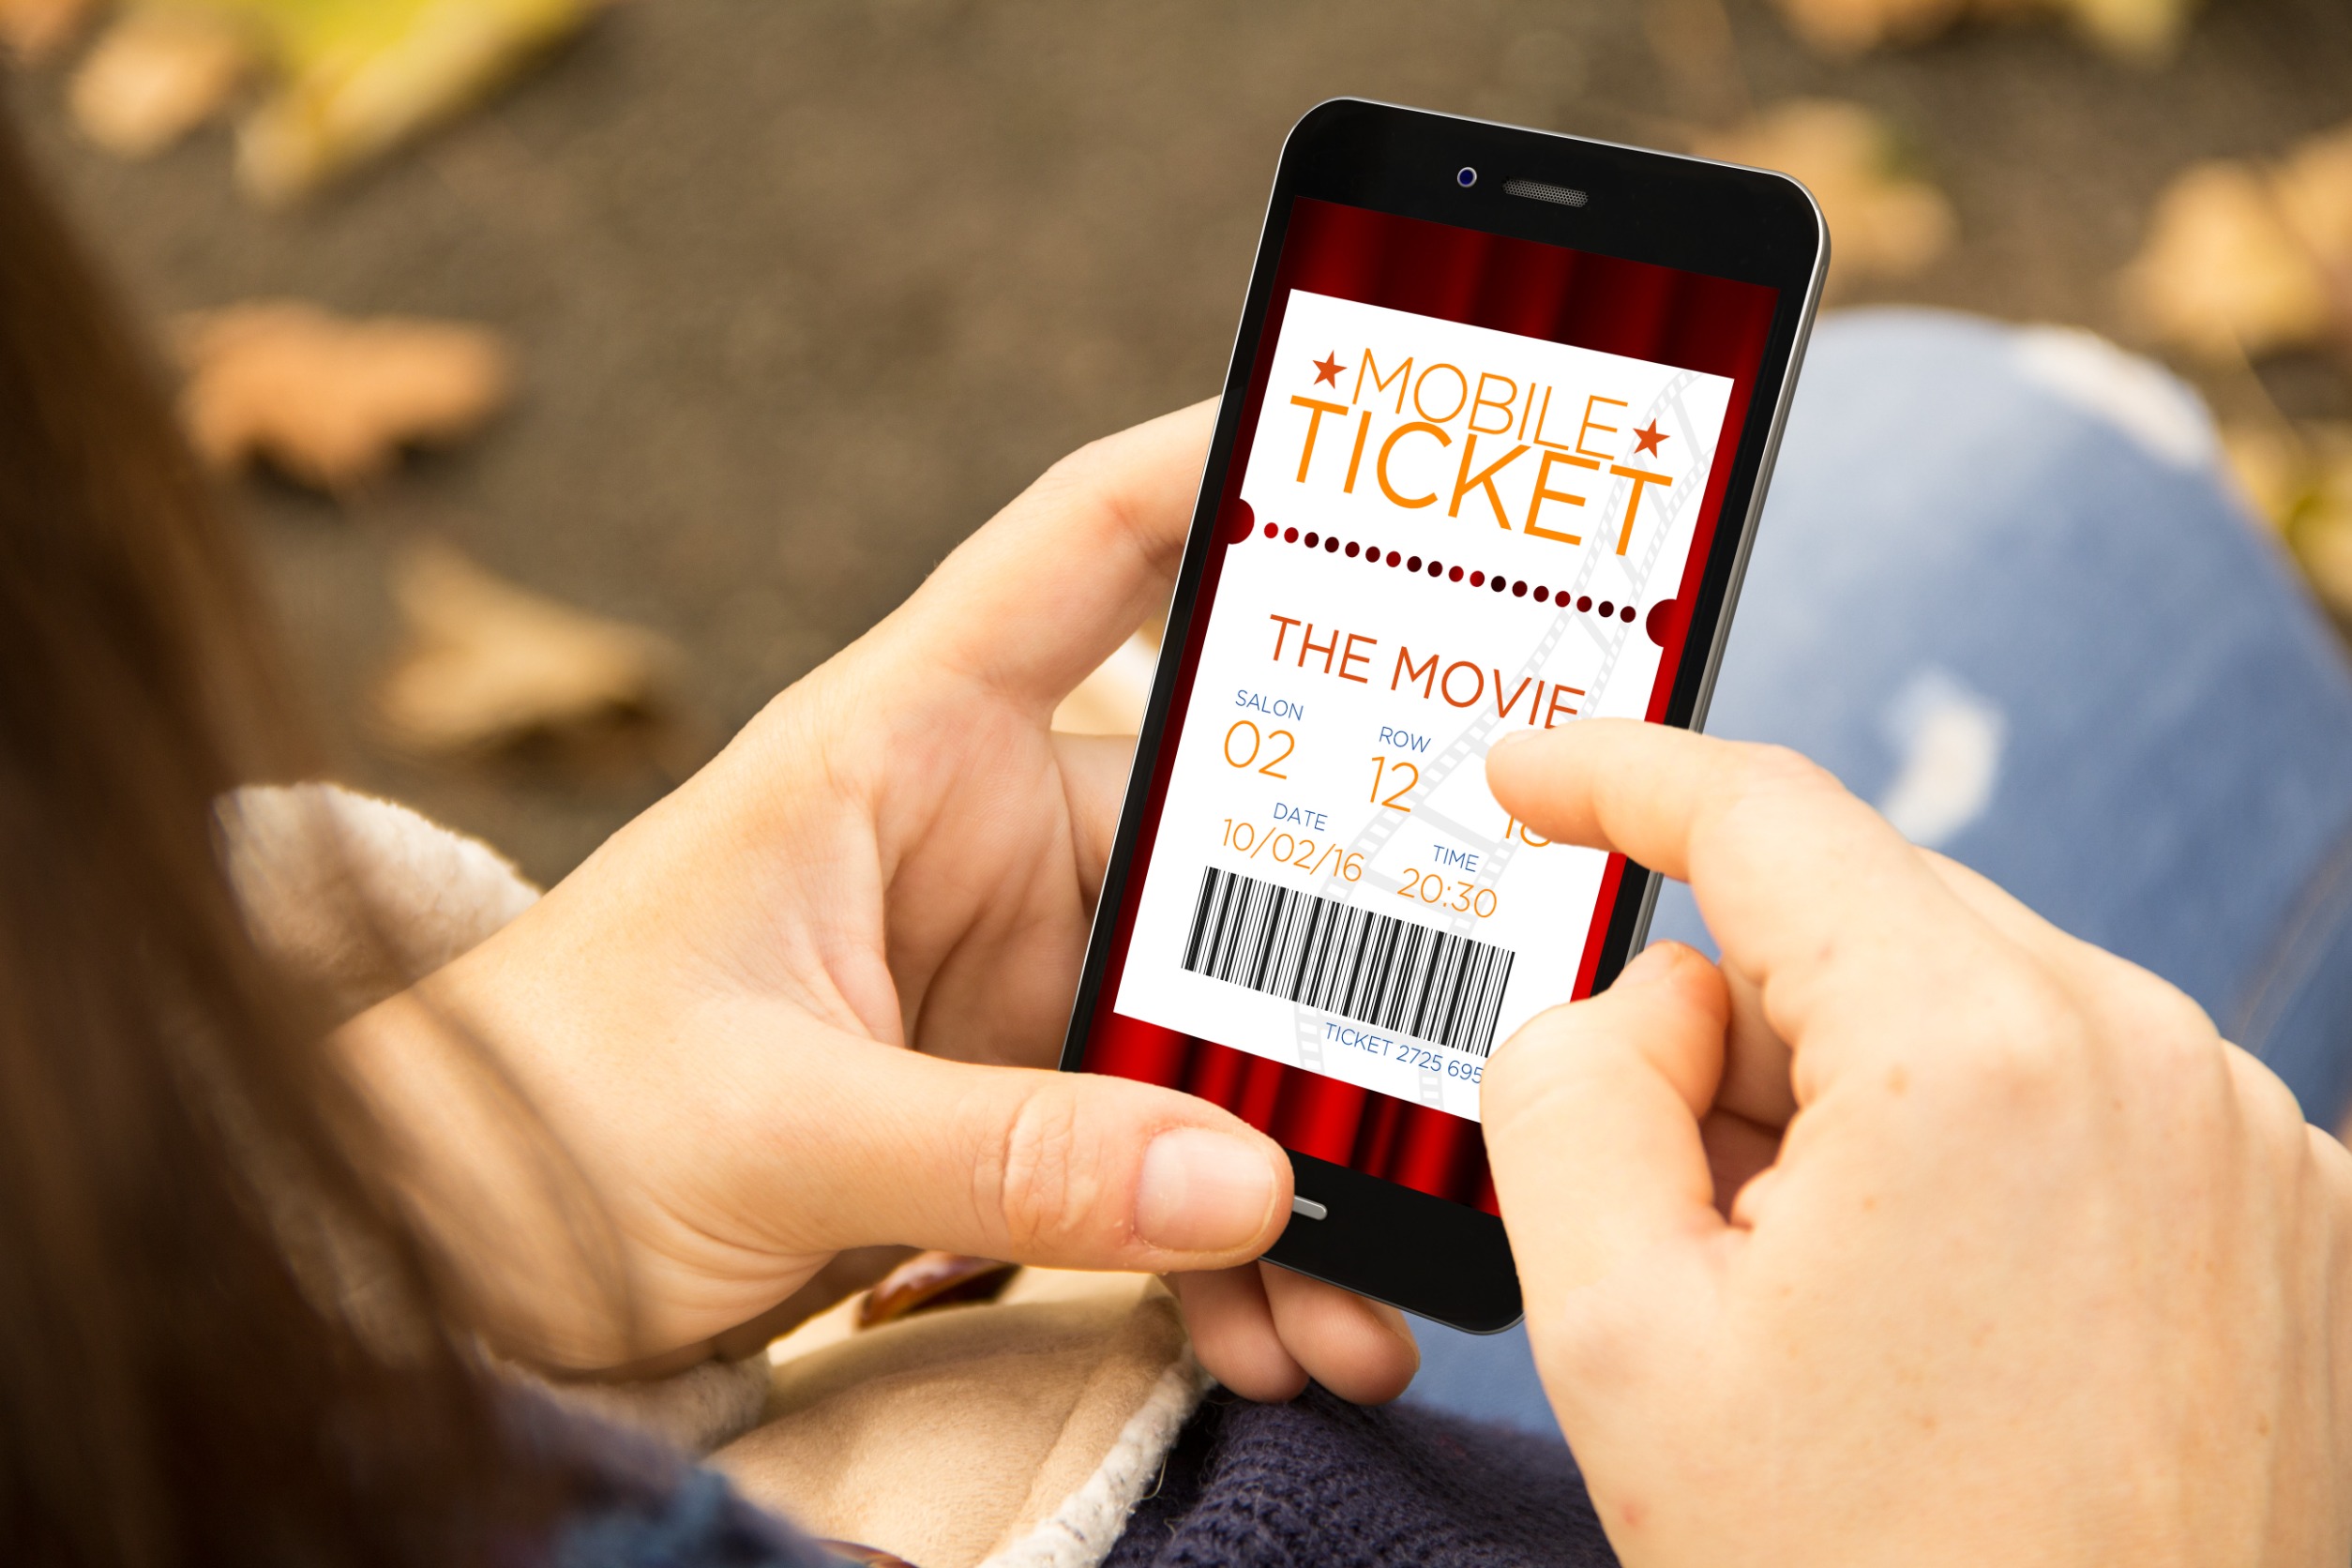 Une femme consulte son ticket numérique sur son portable, vue gros plan sur le portable avec le ticket